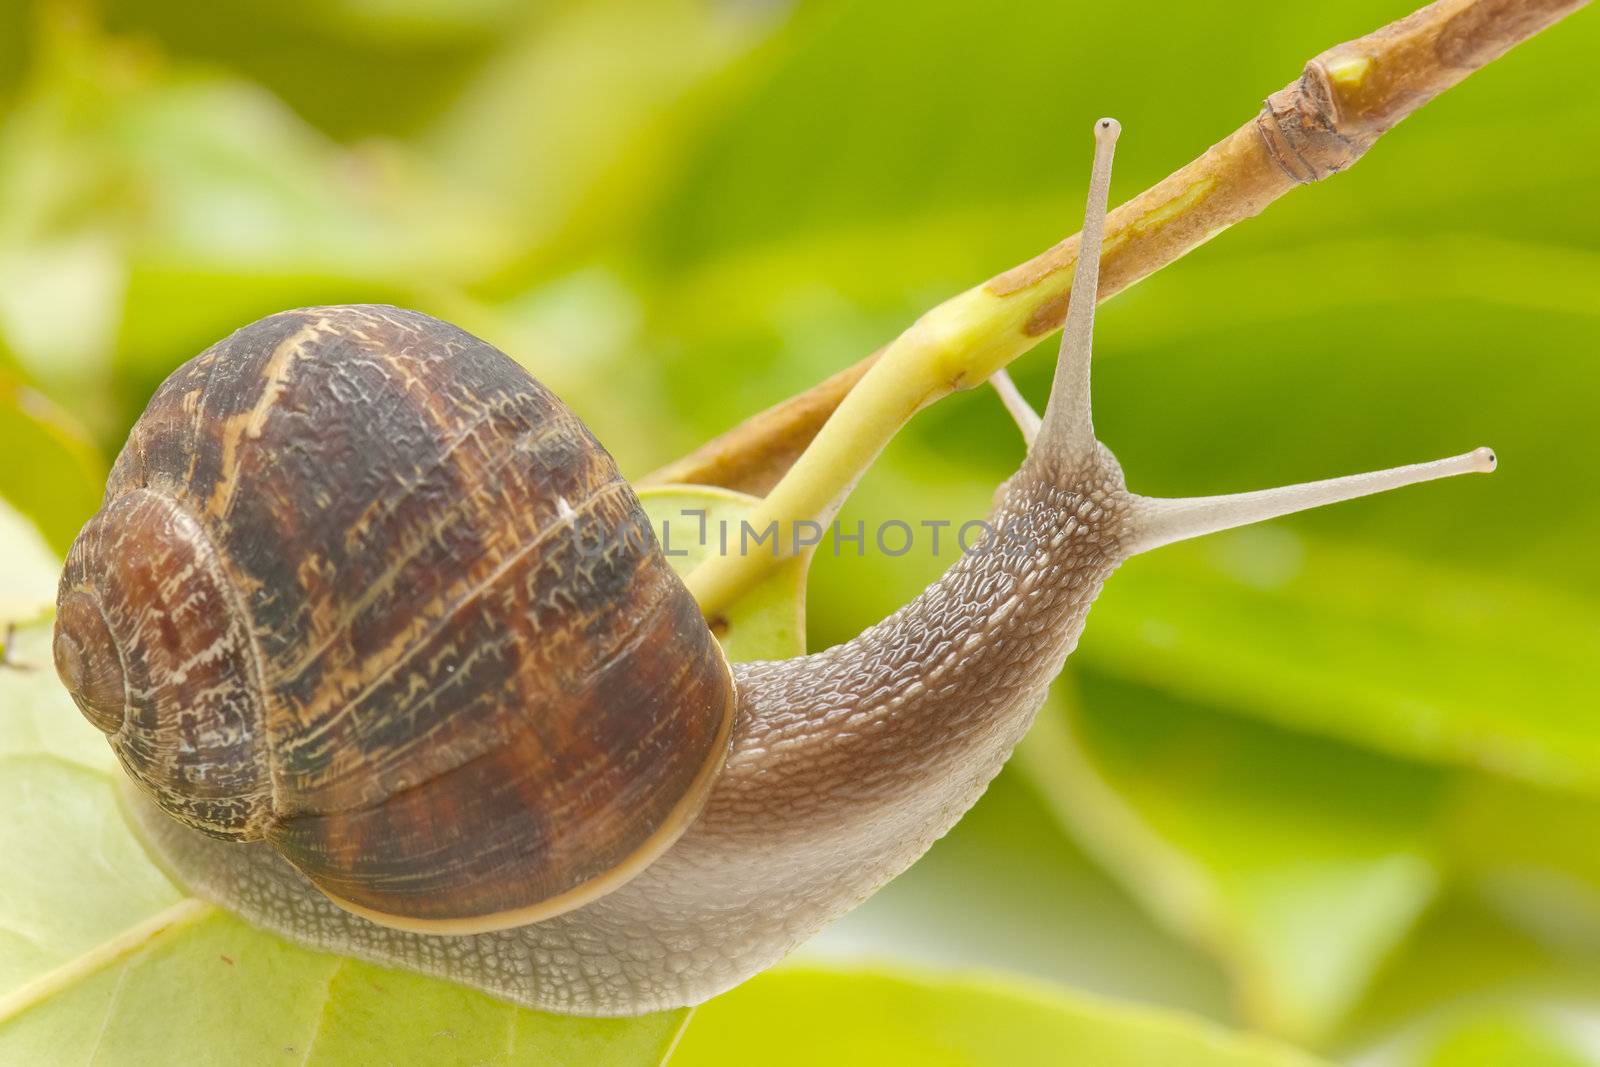 snail taking a slow walk on green leaf